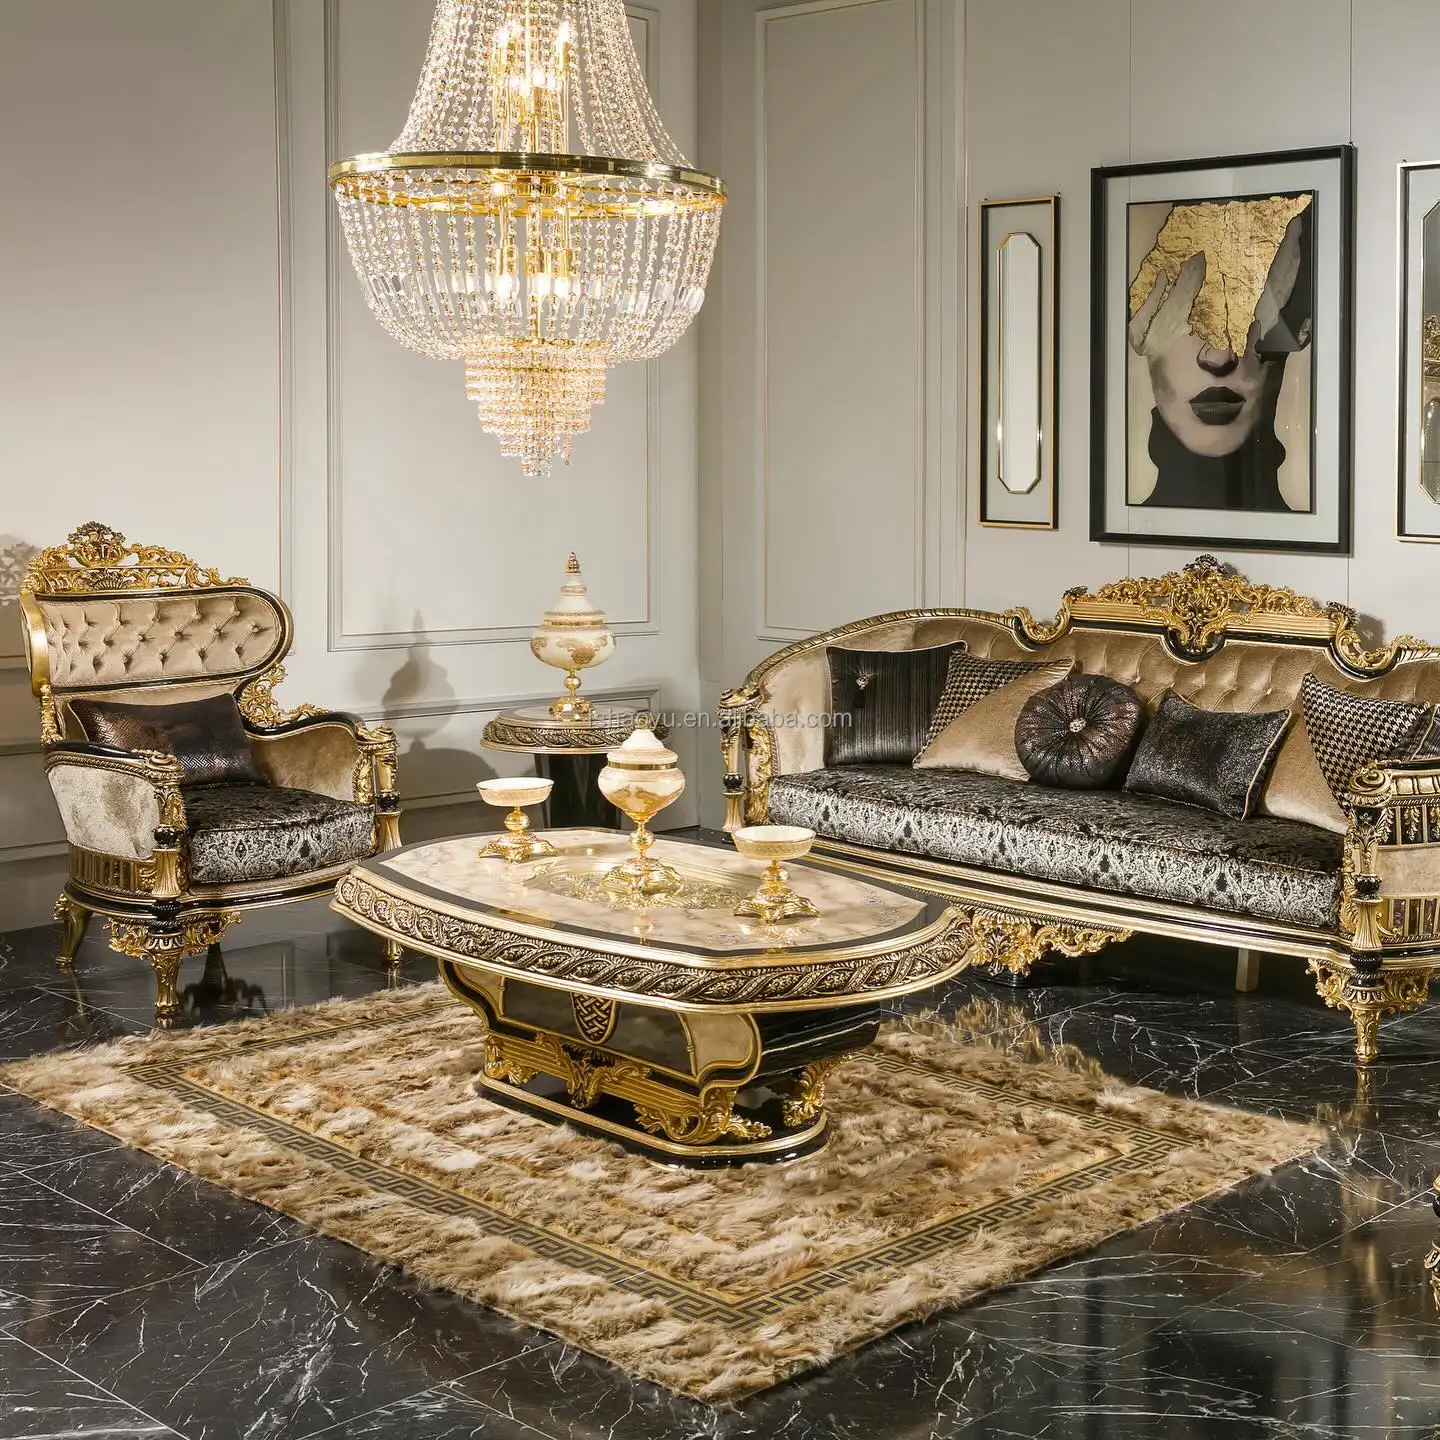 أريكة فاخرة جميلة عالية الجودة منحوتة على الطراز الملكي الفرنسي مجموعة أرائك خشبية ثقيلة مصنوعة يدويًا ملكية وفاخرة